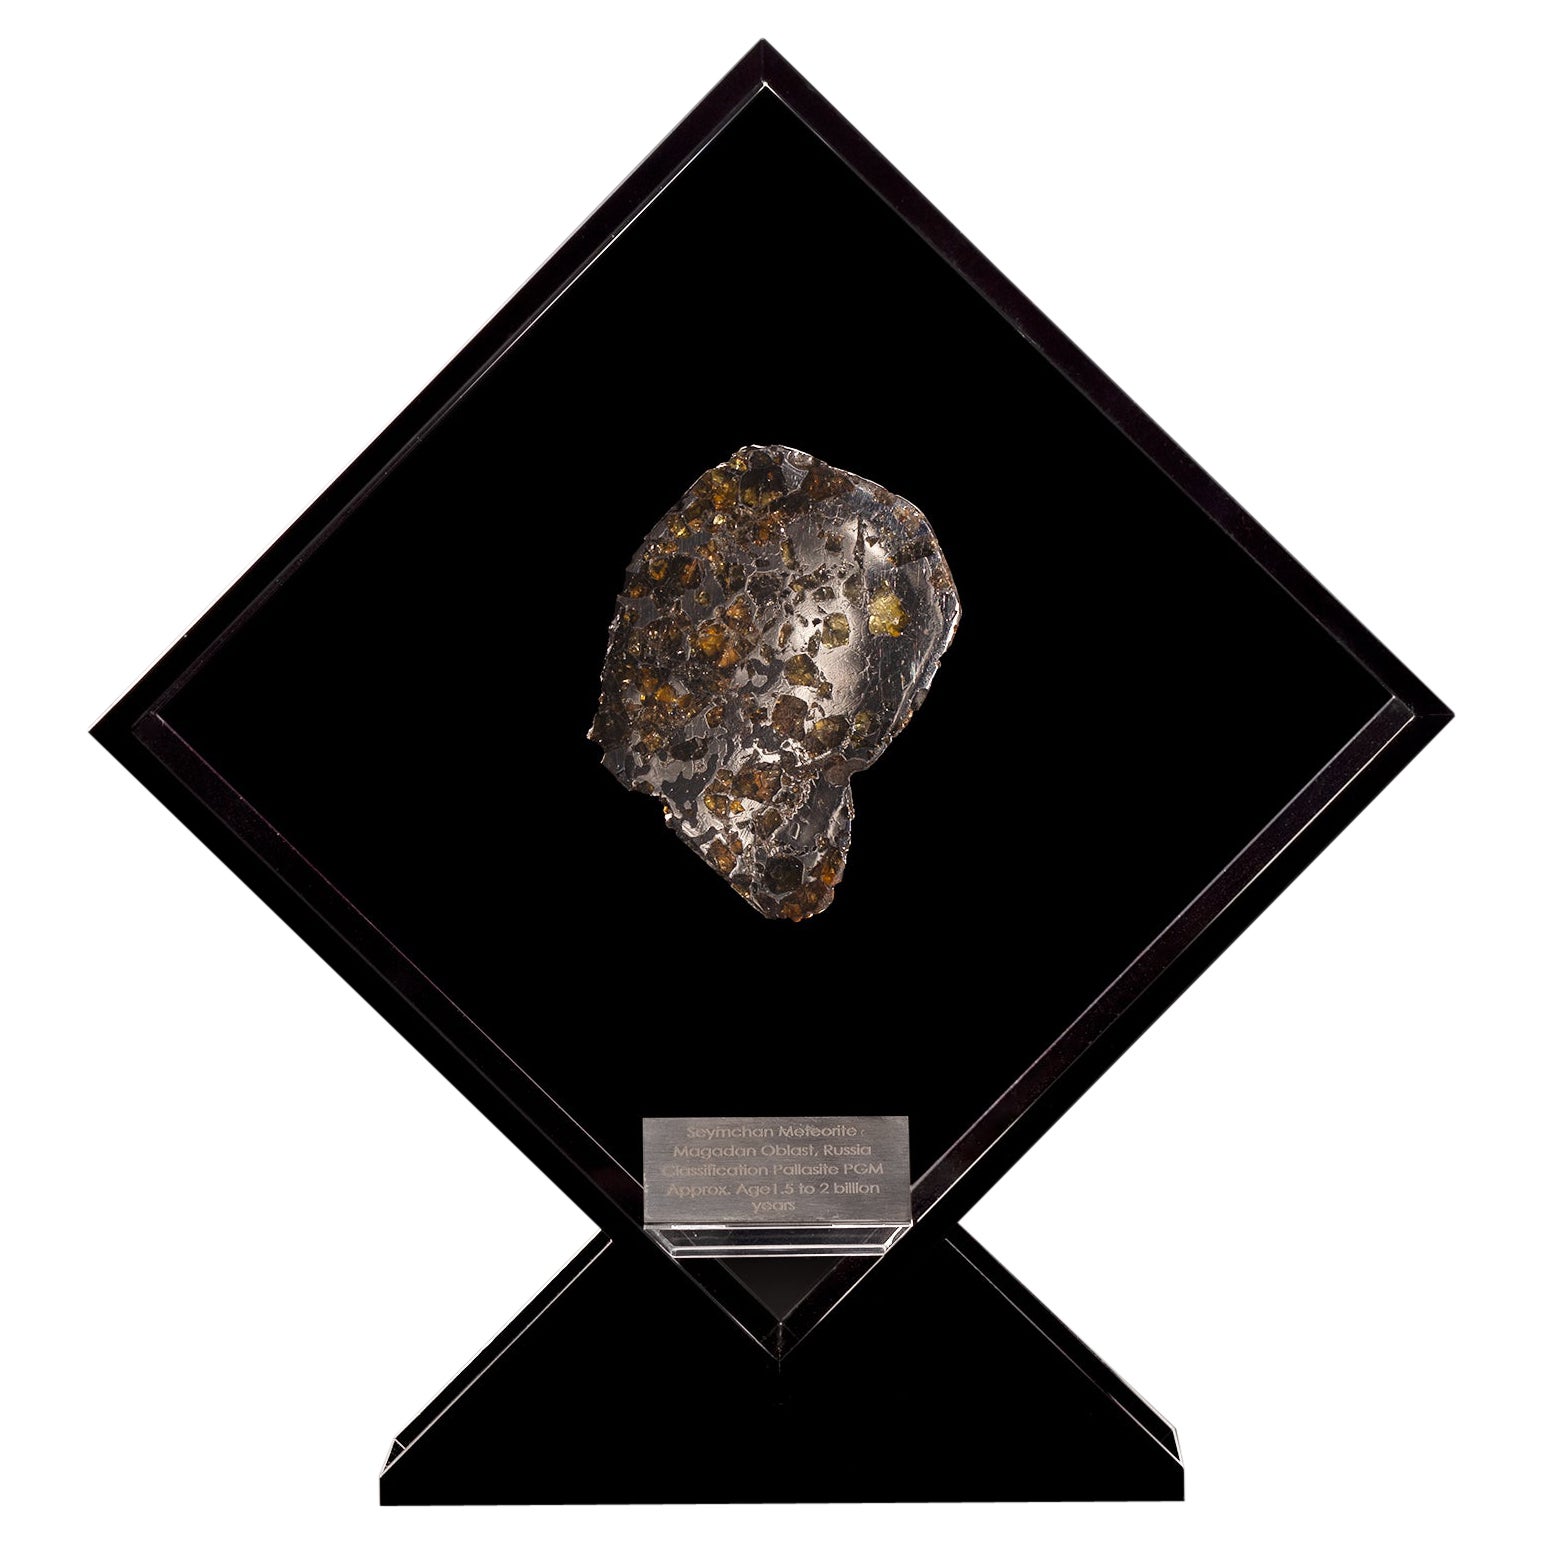 Conception originale, Seymchan avec Olivine Meteorite dans une vitrine en acrylique noire